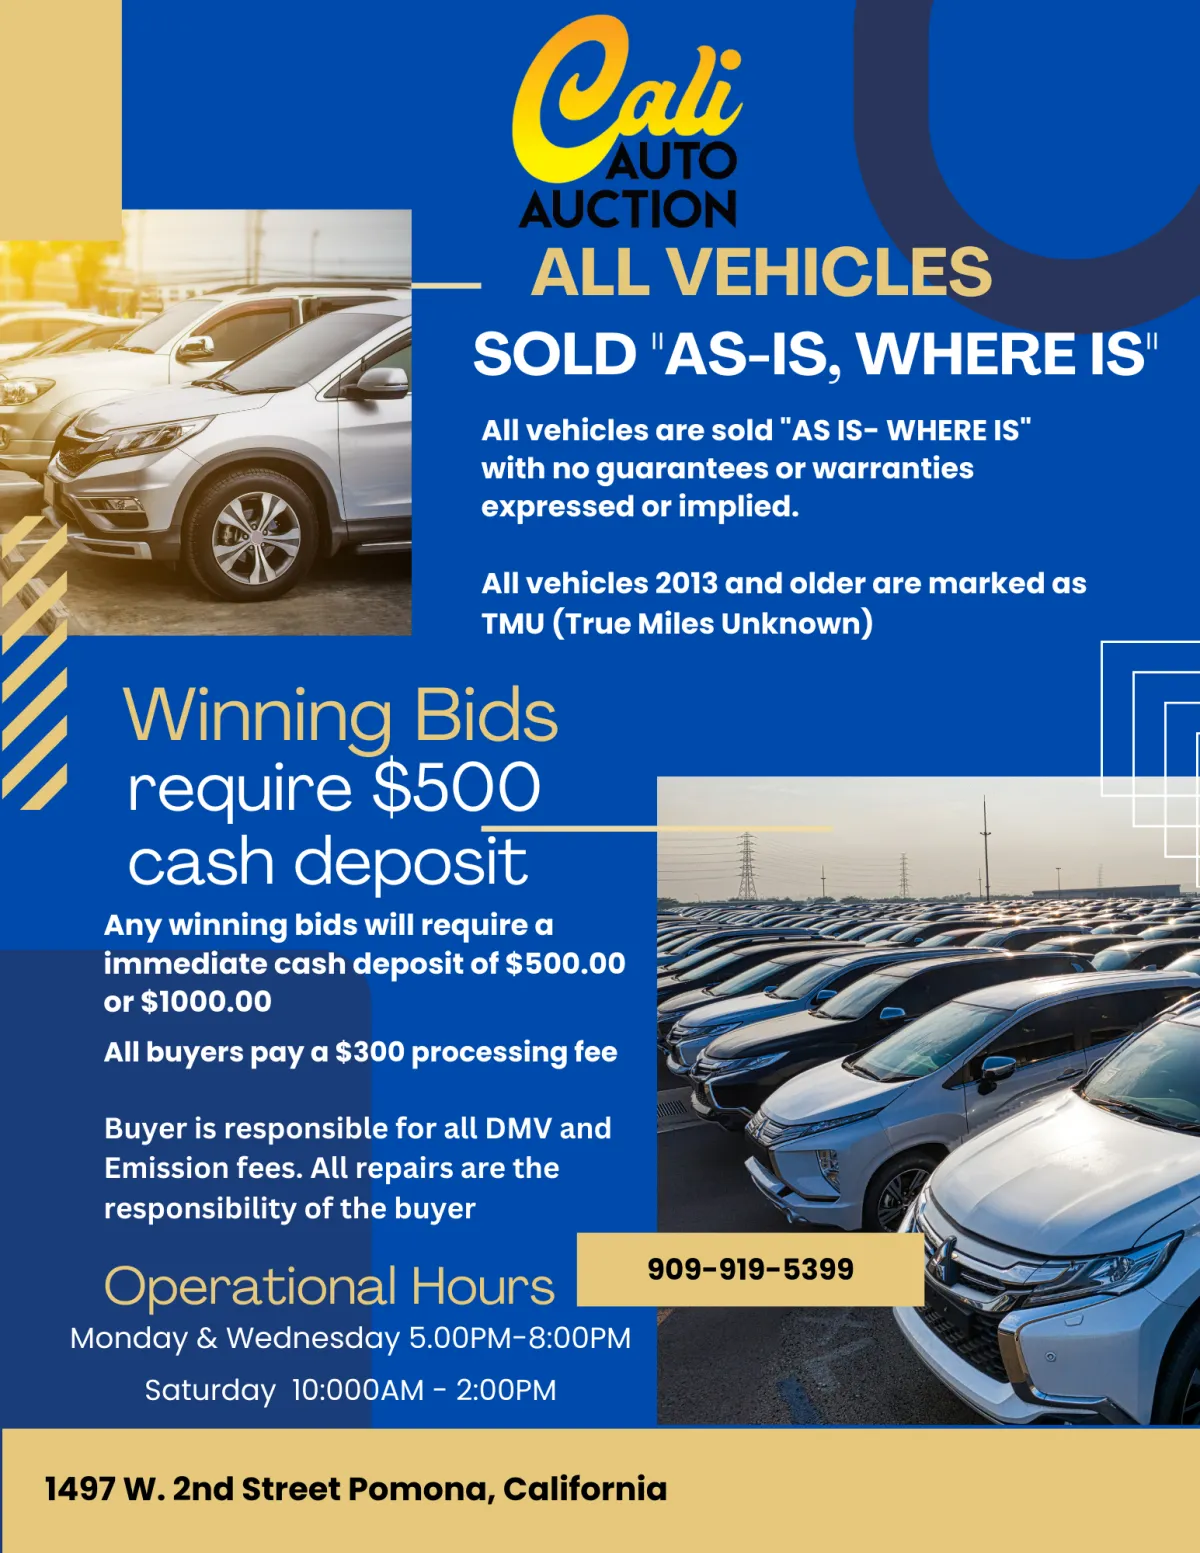 Cali Auto Auction